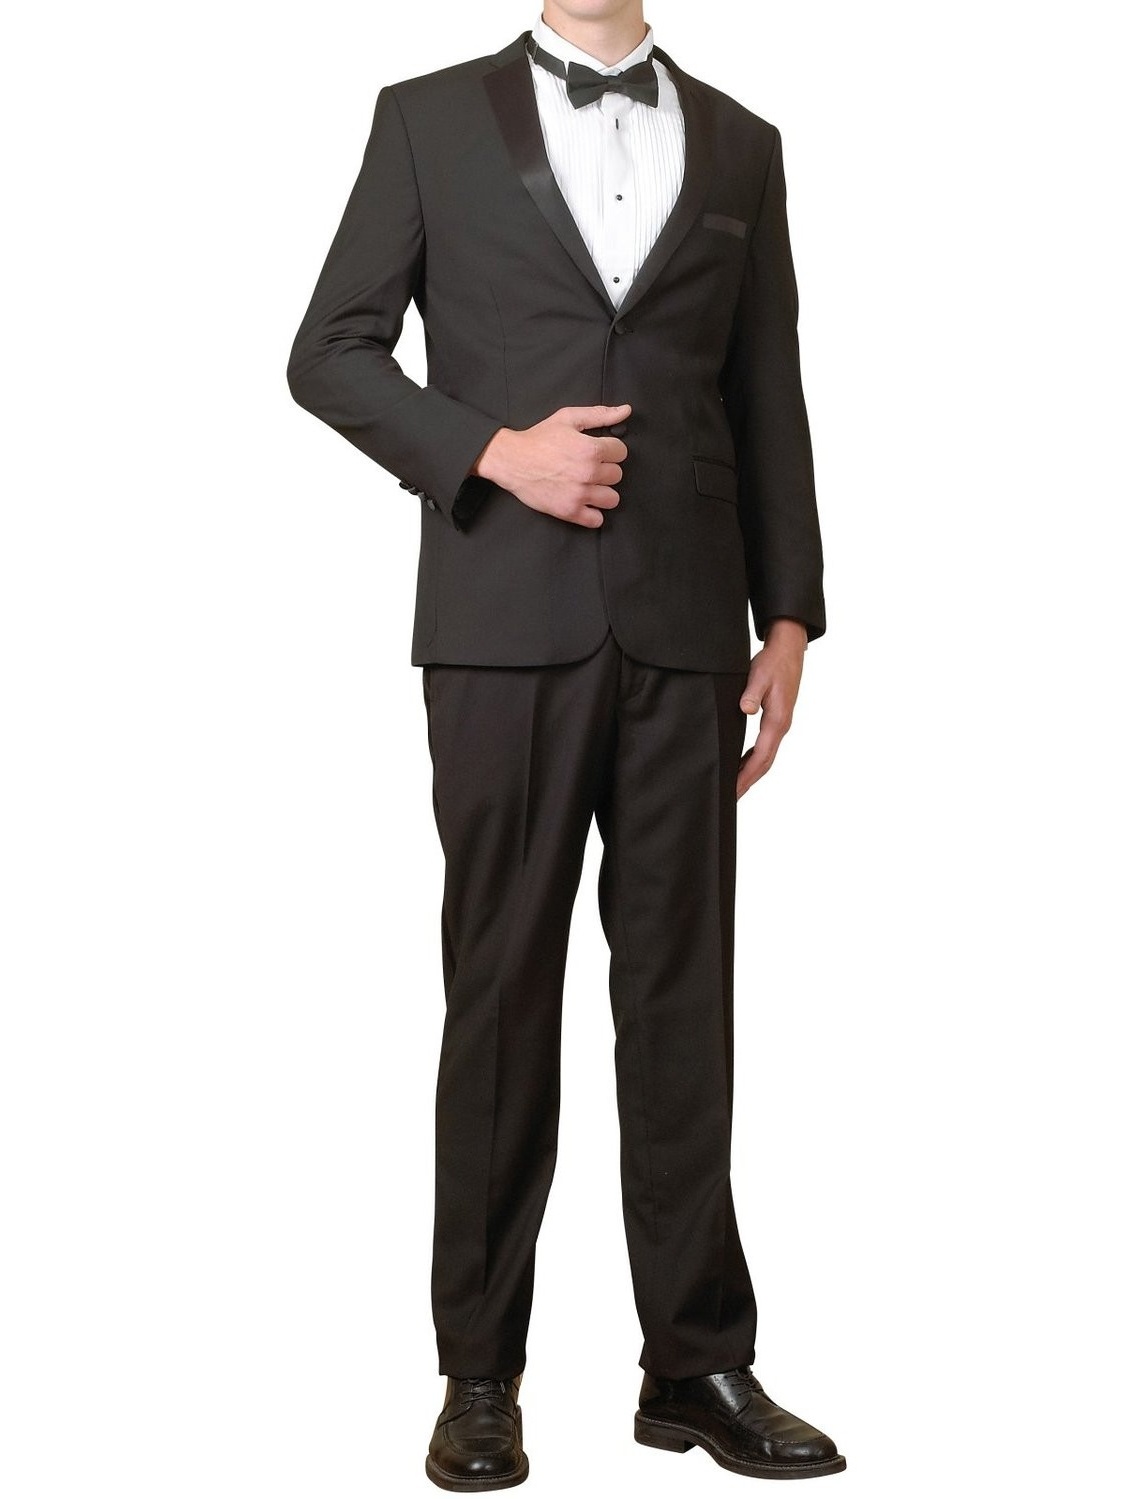 Men's Tuxedo Package | 5 Piece Complete Set | Suit Jacket, Tux Pants, Shirt Cummerbund and Bow Tie - image 1 of 2